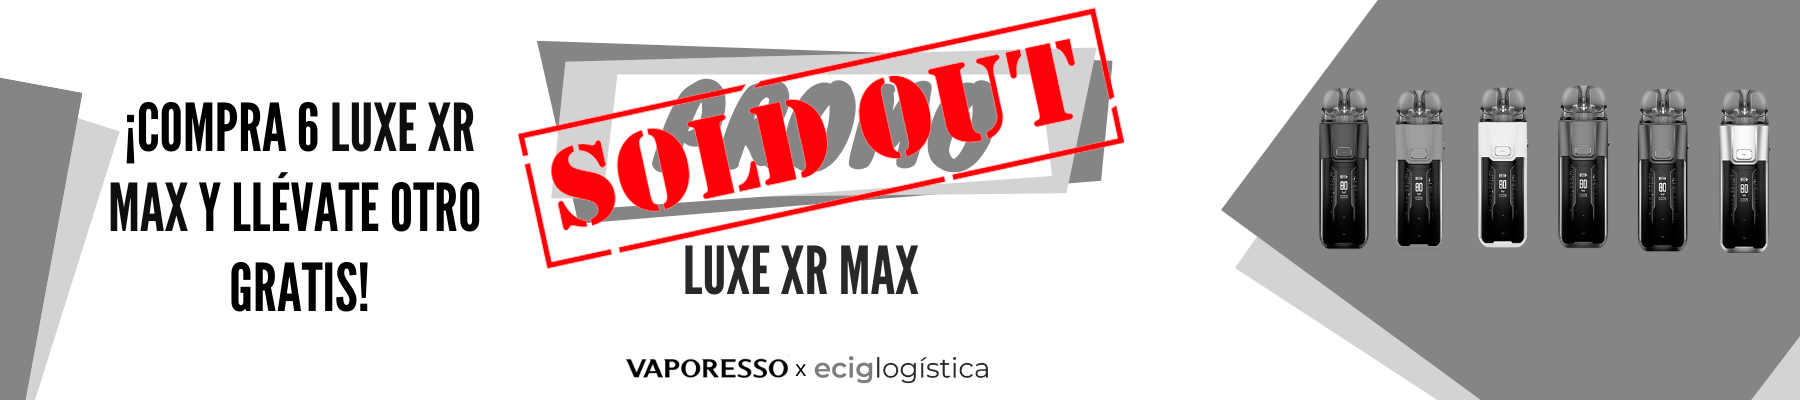 Compra 6 LUXE XR MAX y llévate 1.